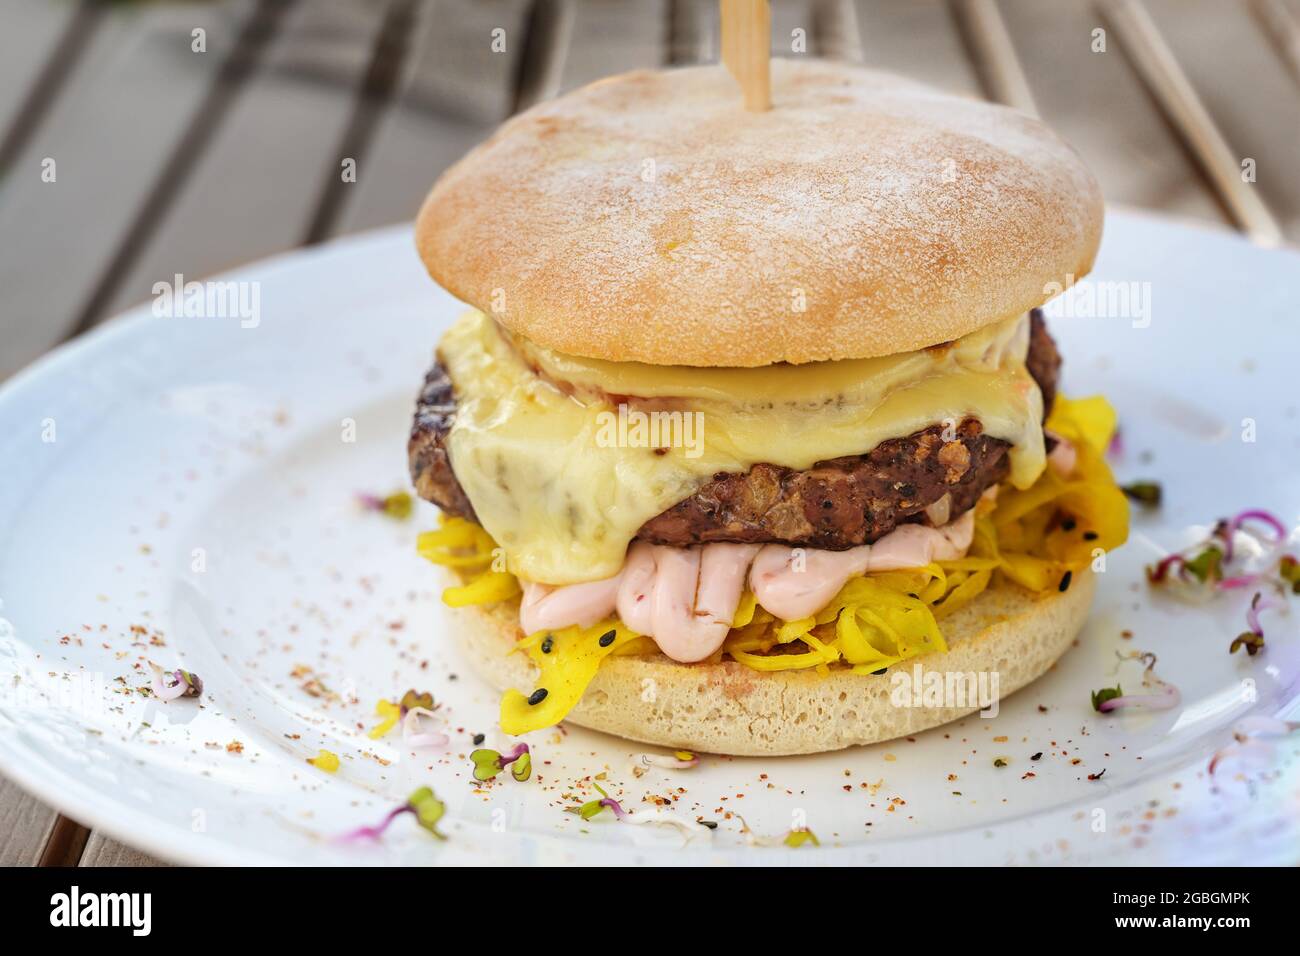 Burger mit einem groben Fleischpastete, Käse, Mayonnaise und Safrankohlsalat, garniert mit Gewürzen und Rettichsprossen auf einem weißen Teller und einem hölzernen Stockfoto